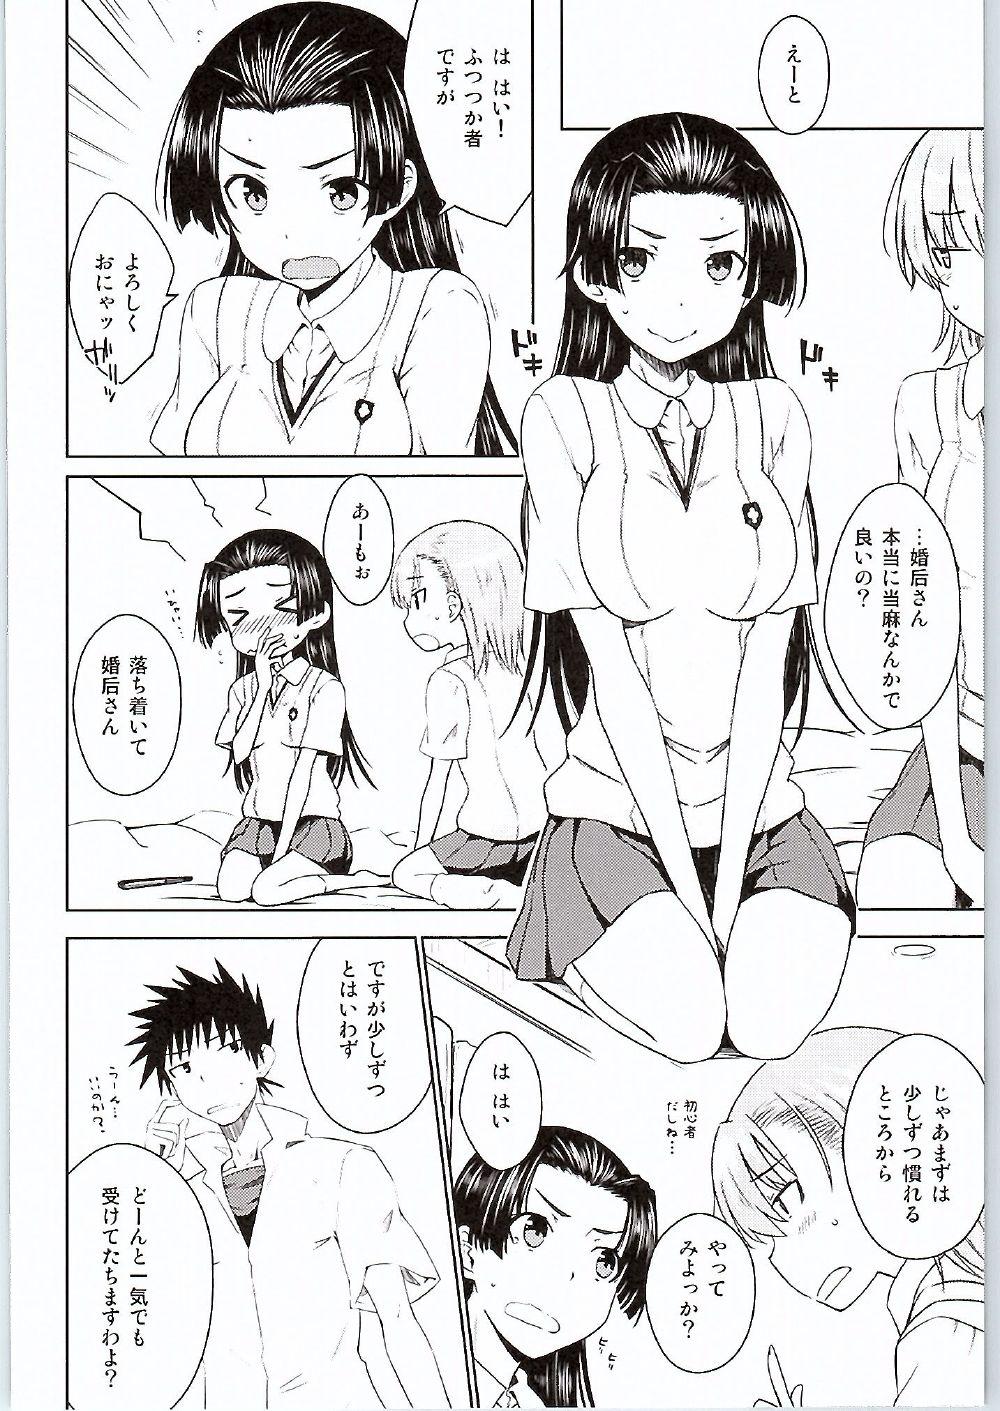 Bulge BEAUTIFUL SHINE - Toaru kagaku no railgun One - Page 7